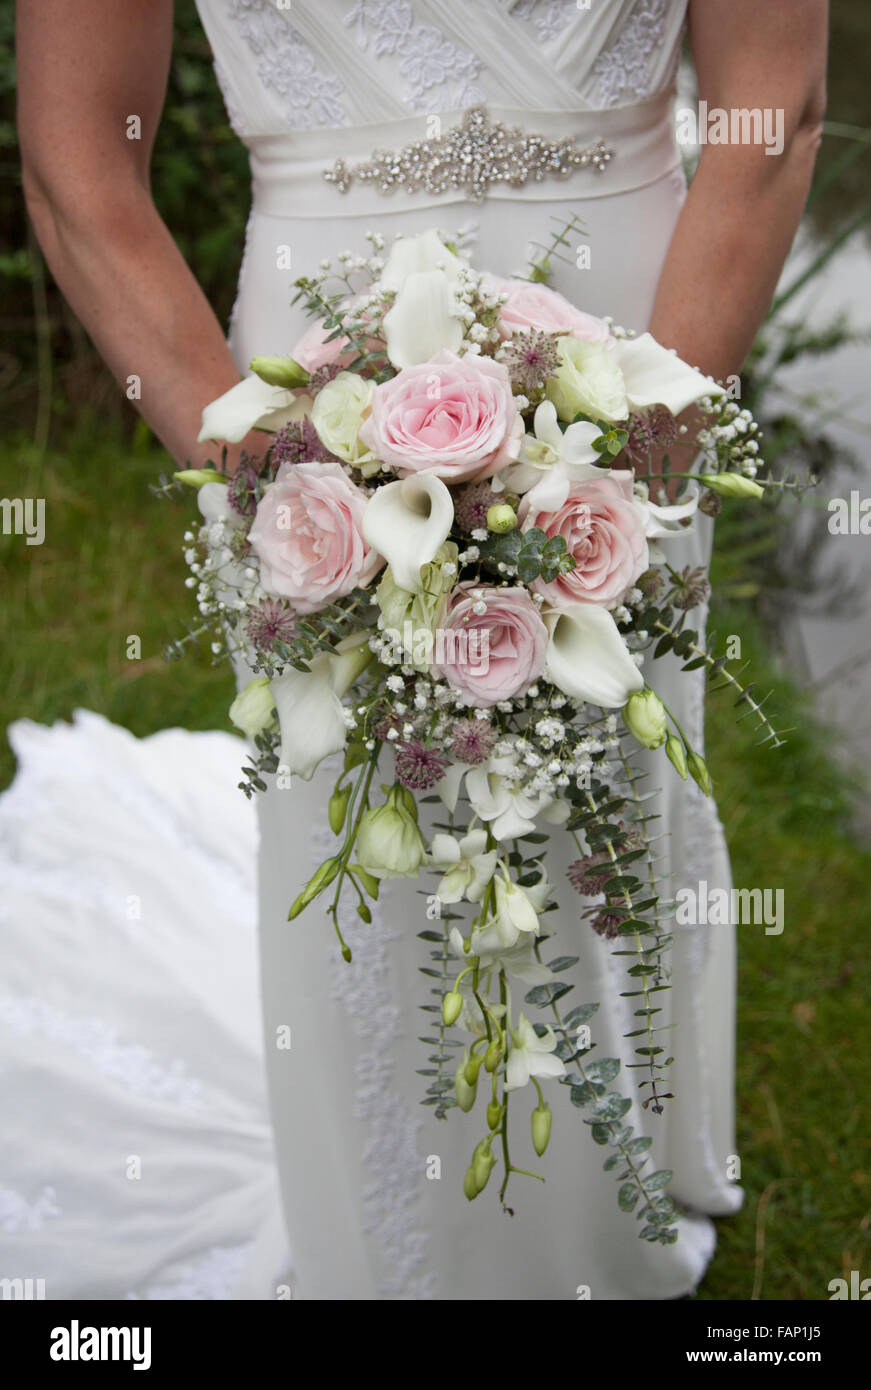 Brides bouquet, svoltasi a fronte del suo abito da sposa, mostrando le rose  rosa e bianco cala gigli con fogliame verde in un paese di lingua inglese  wedding Foto stock - Alamy